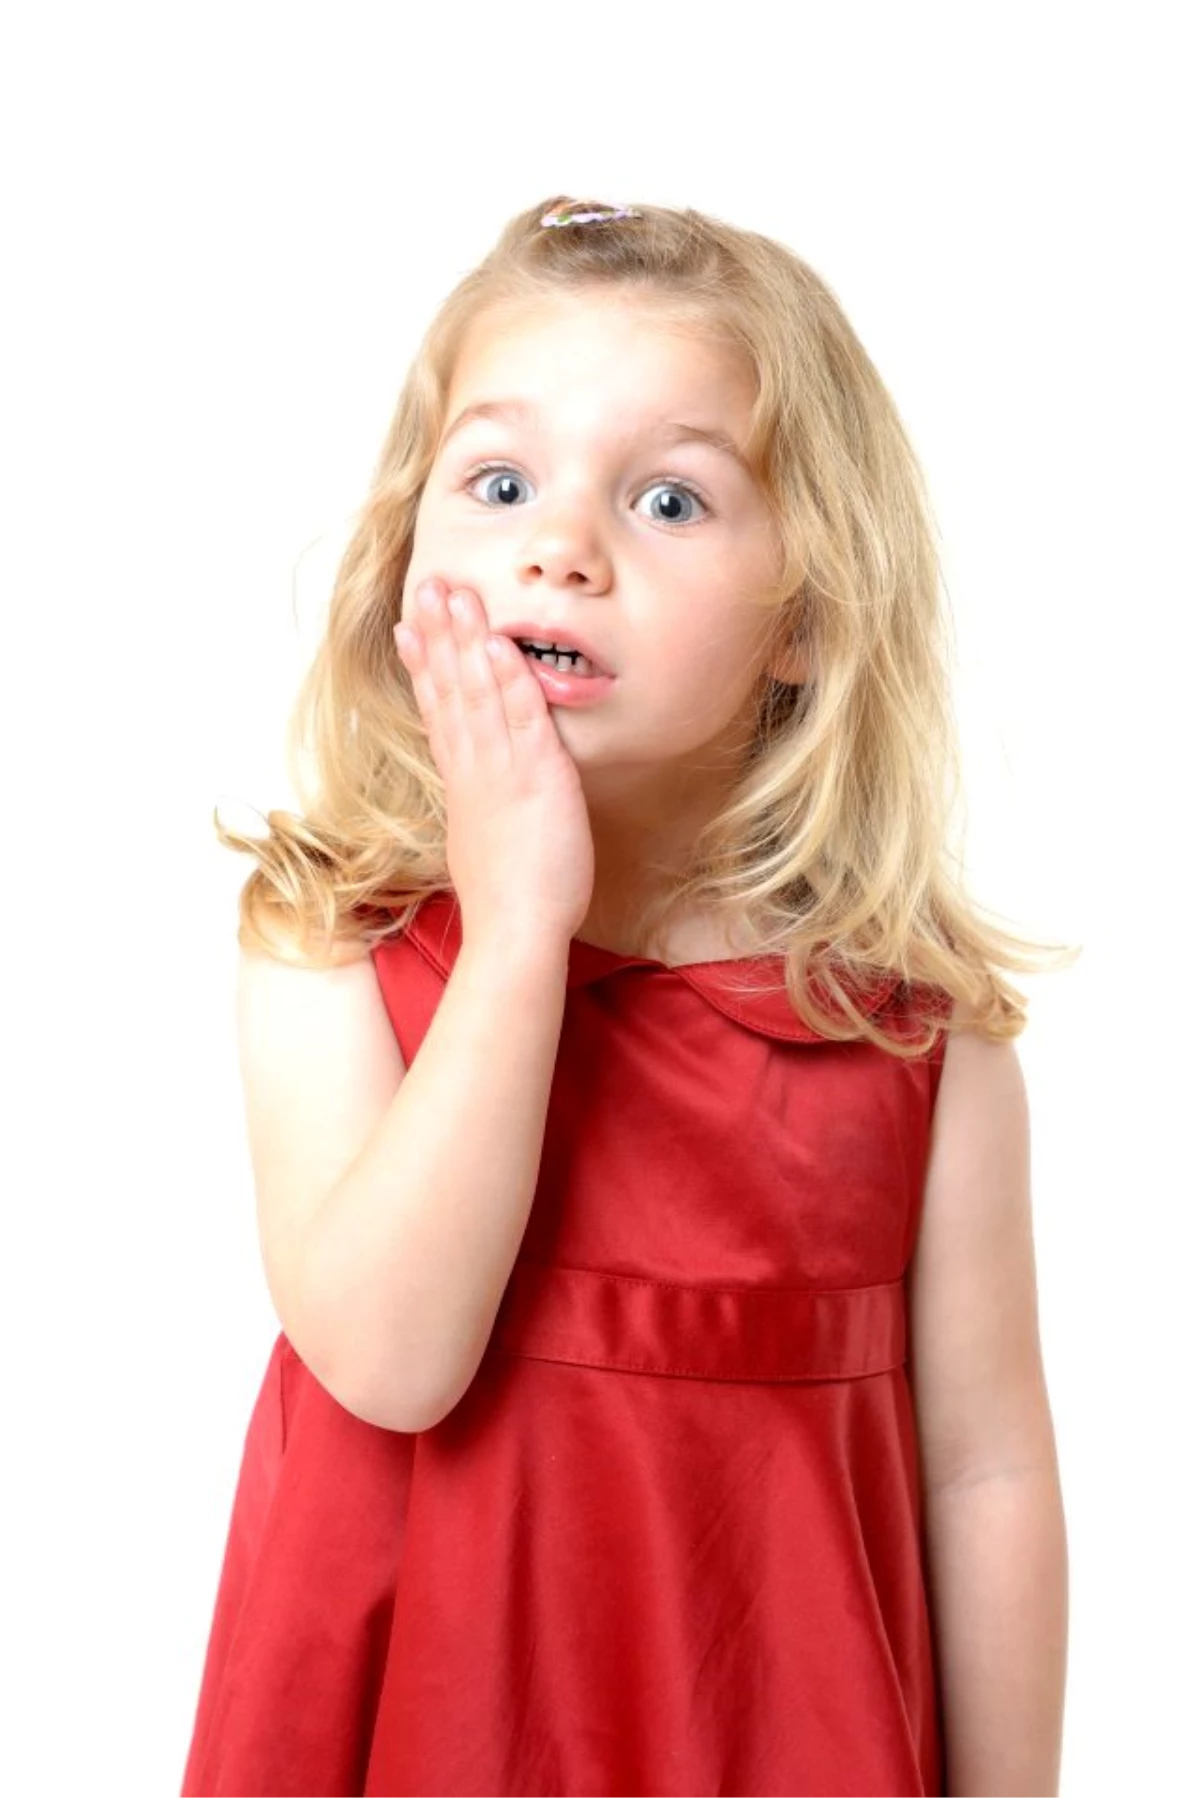 Çocukları Erken Yaşta Diş Hekimi ile Tanıştırmanın Faydaları